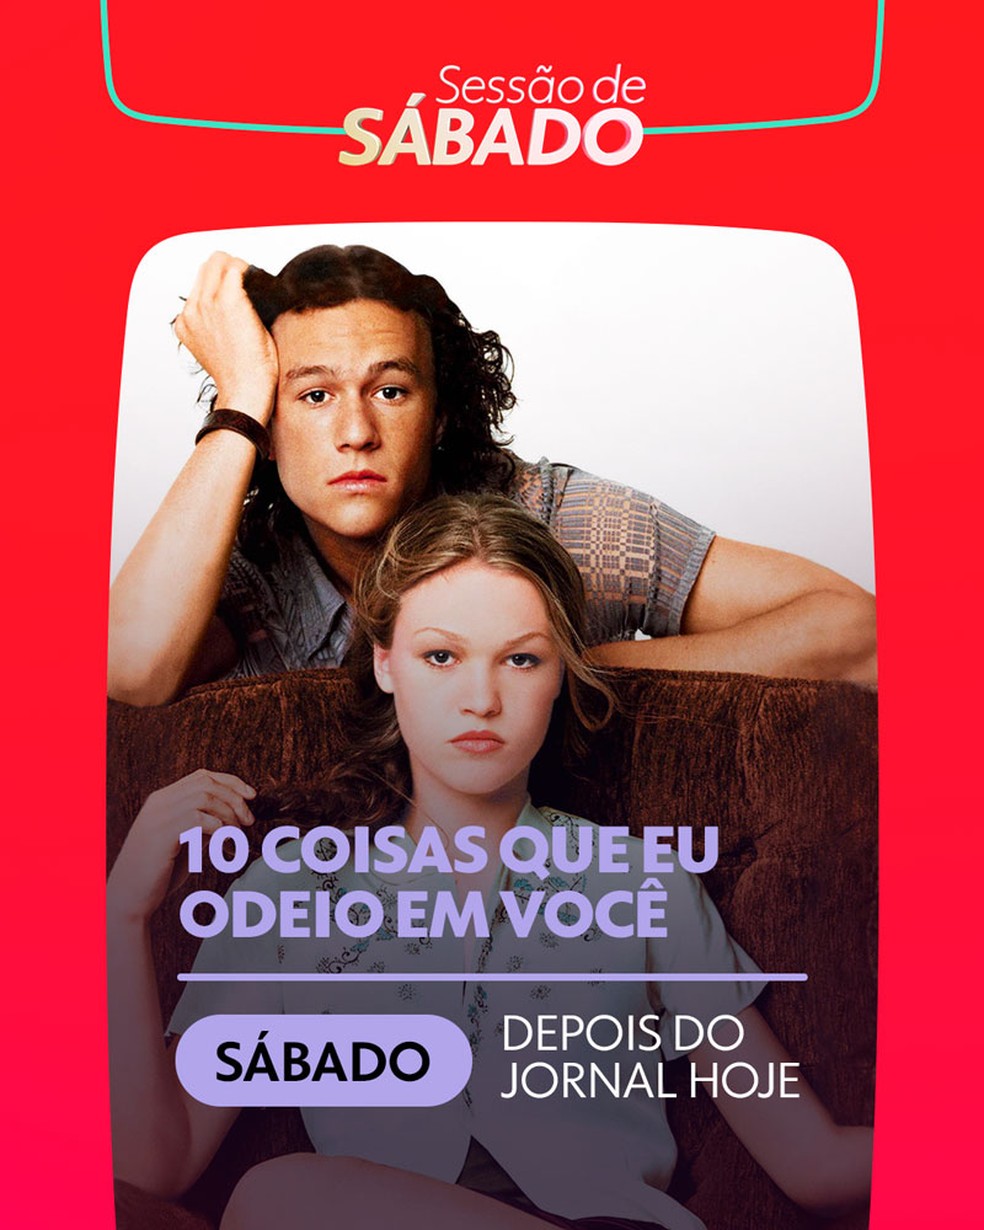 Filmes que a Globo vai passar no fim de semana (30/10 a 1/11): It - A Coisa  é o grande destaque na programação! - Notícias de cinema - AdoroCinema